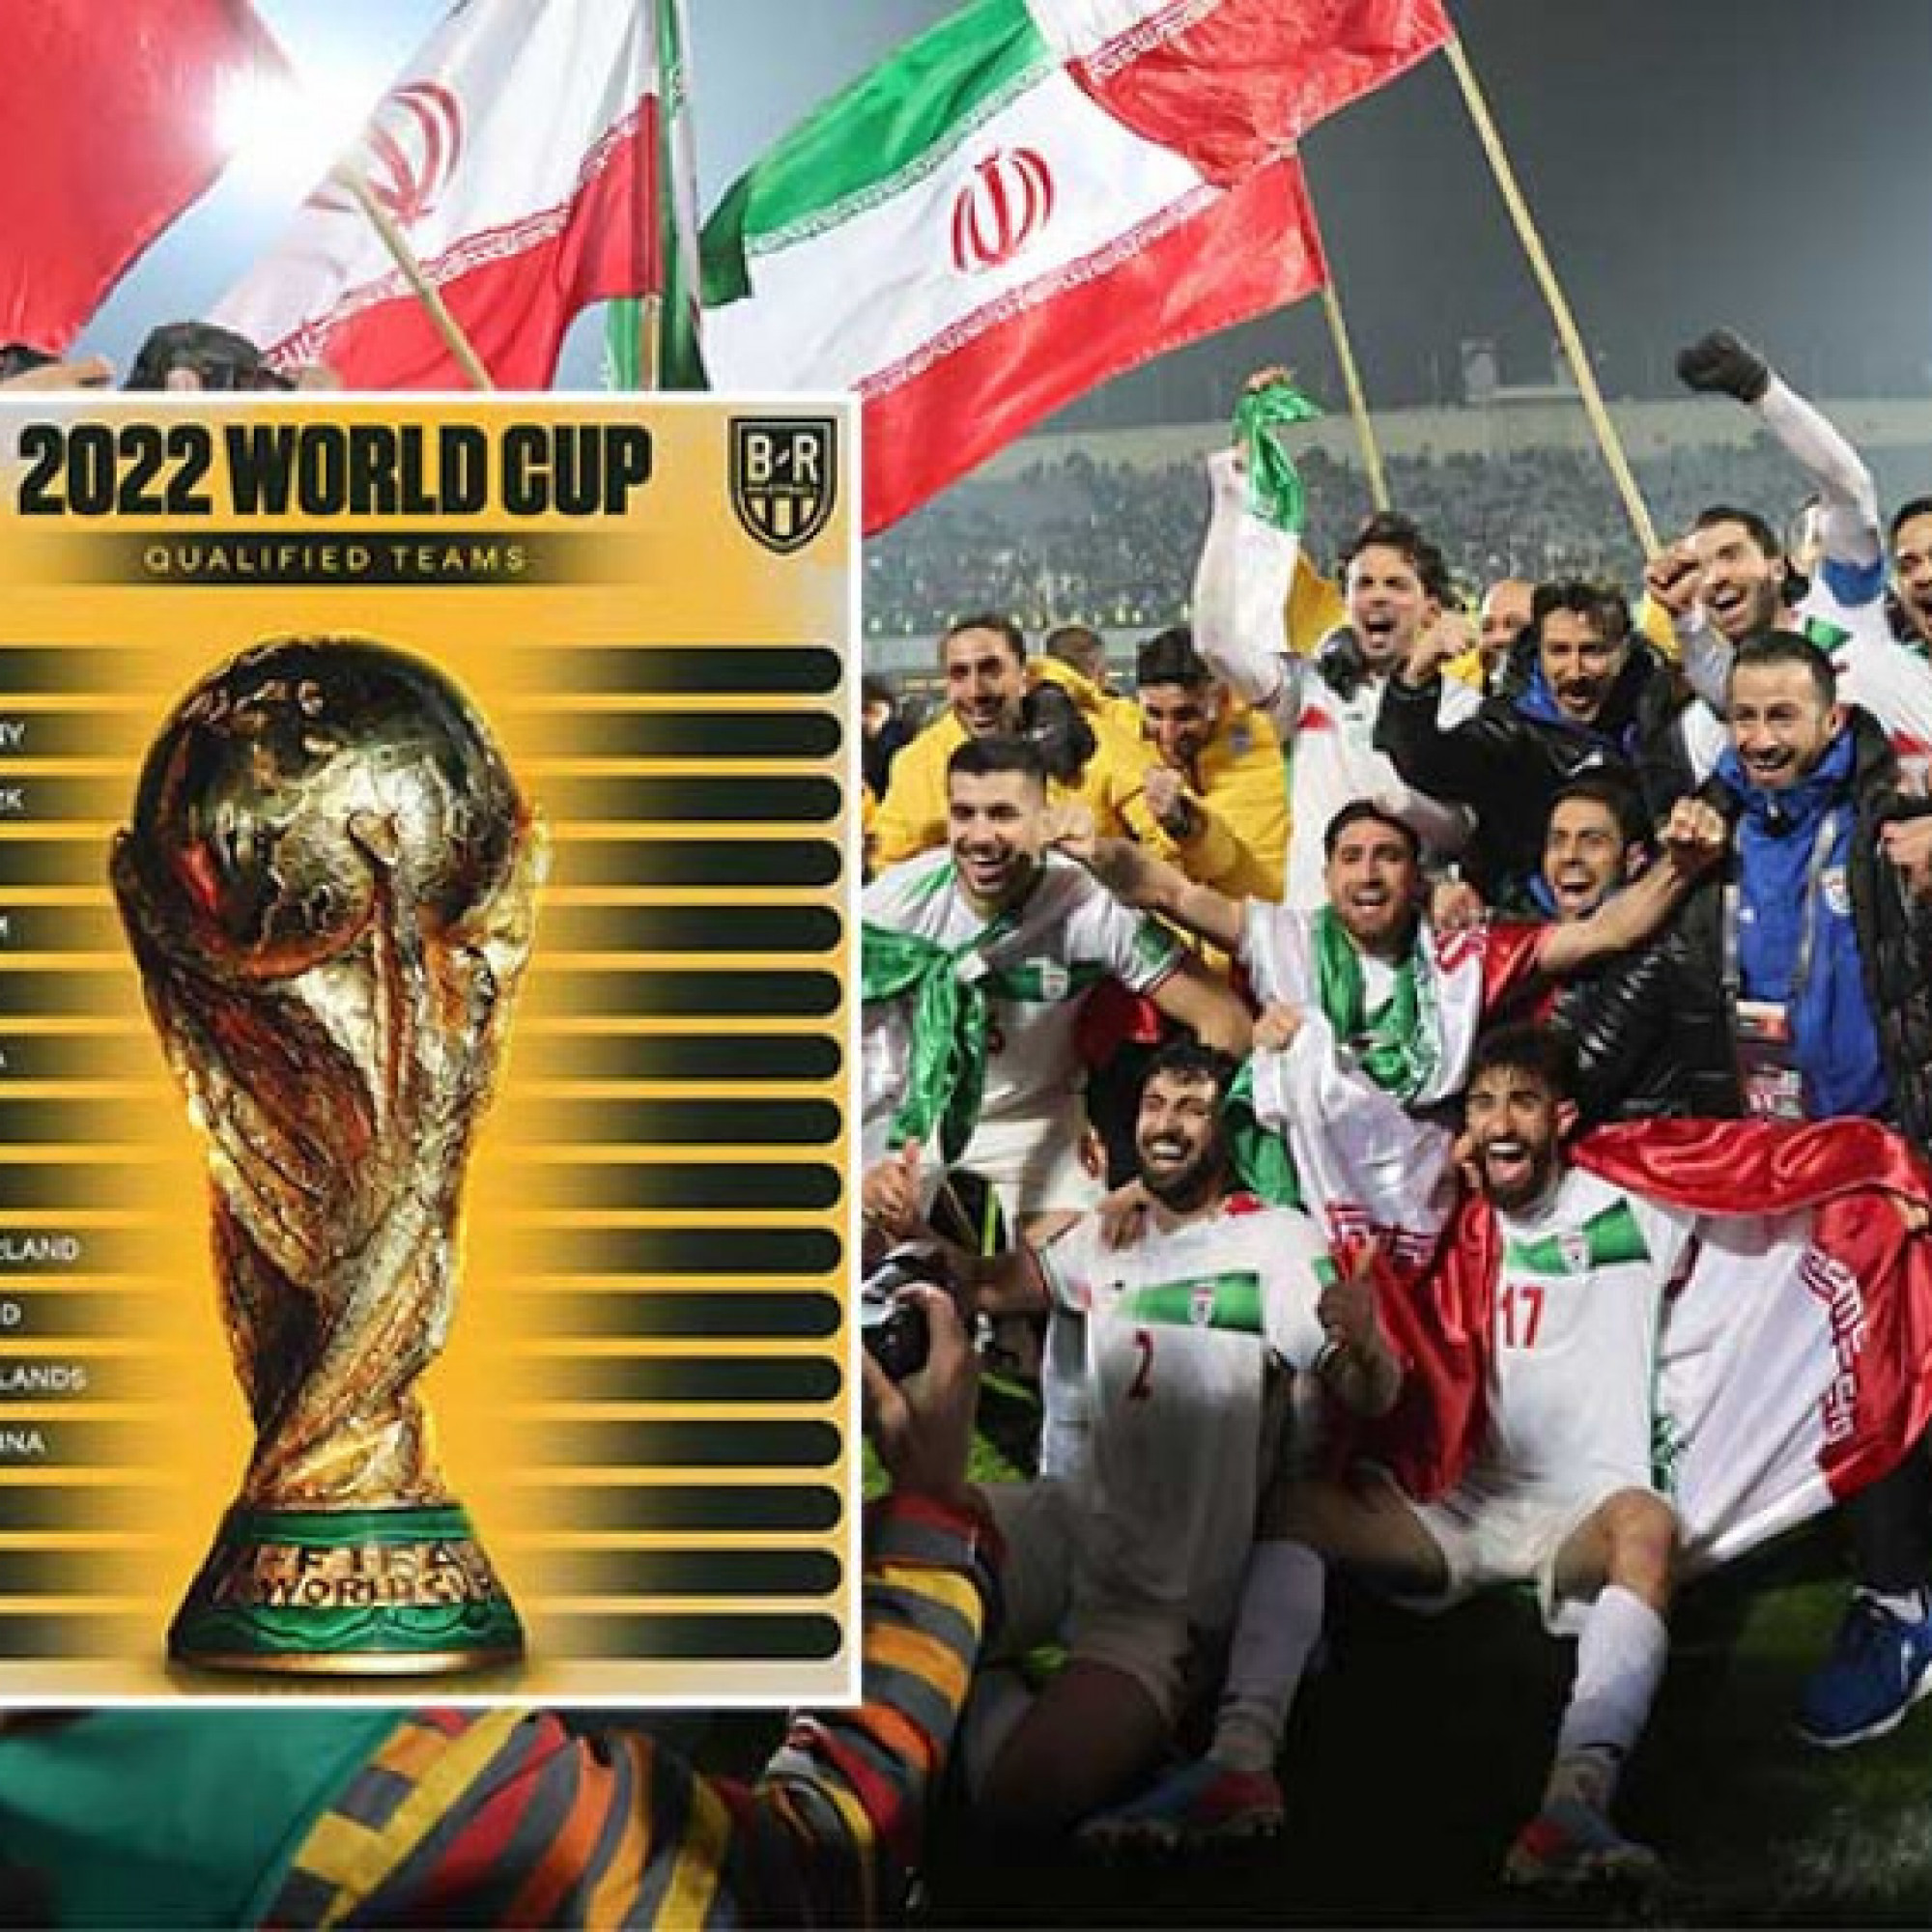  - 14 anh hào chính thức giành vé dự World Cup: Châu Á góp 2 đại diện